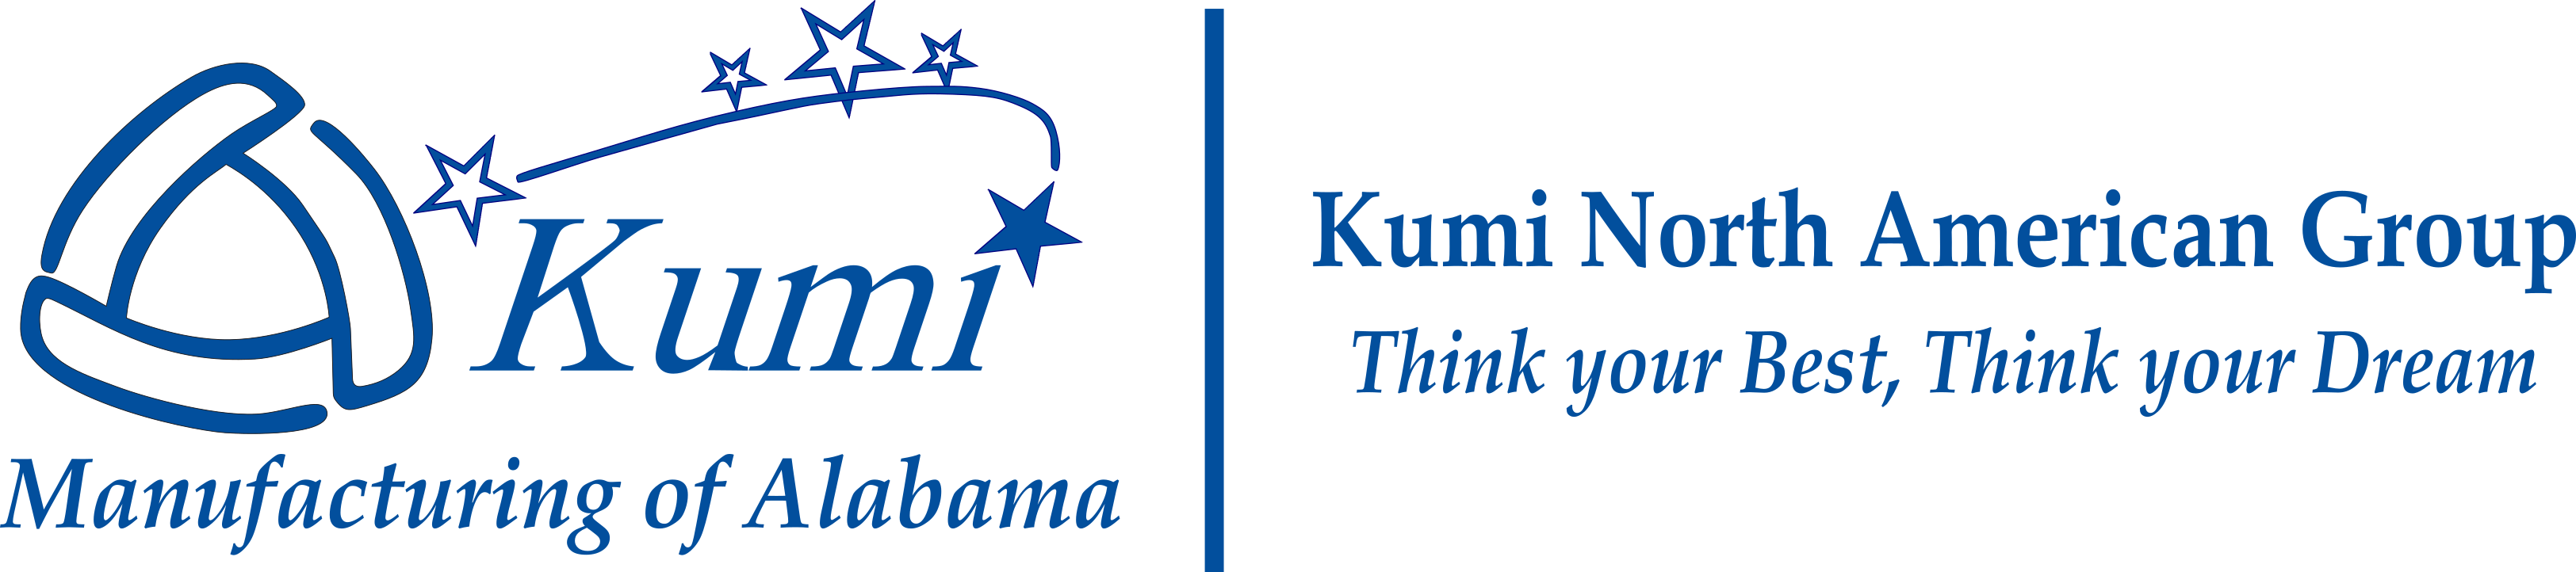 Kumi Manufacturing of Alabama